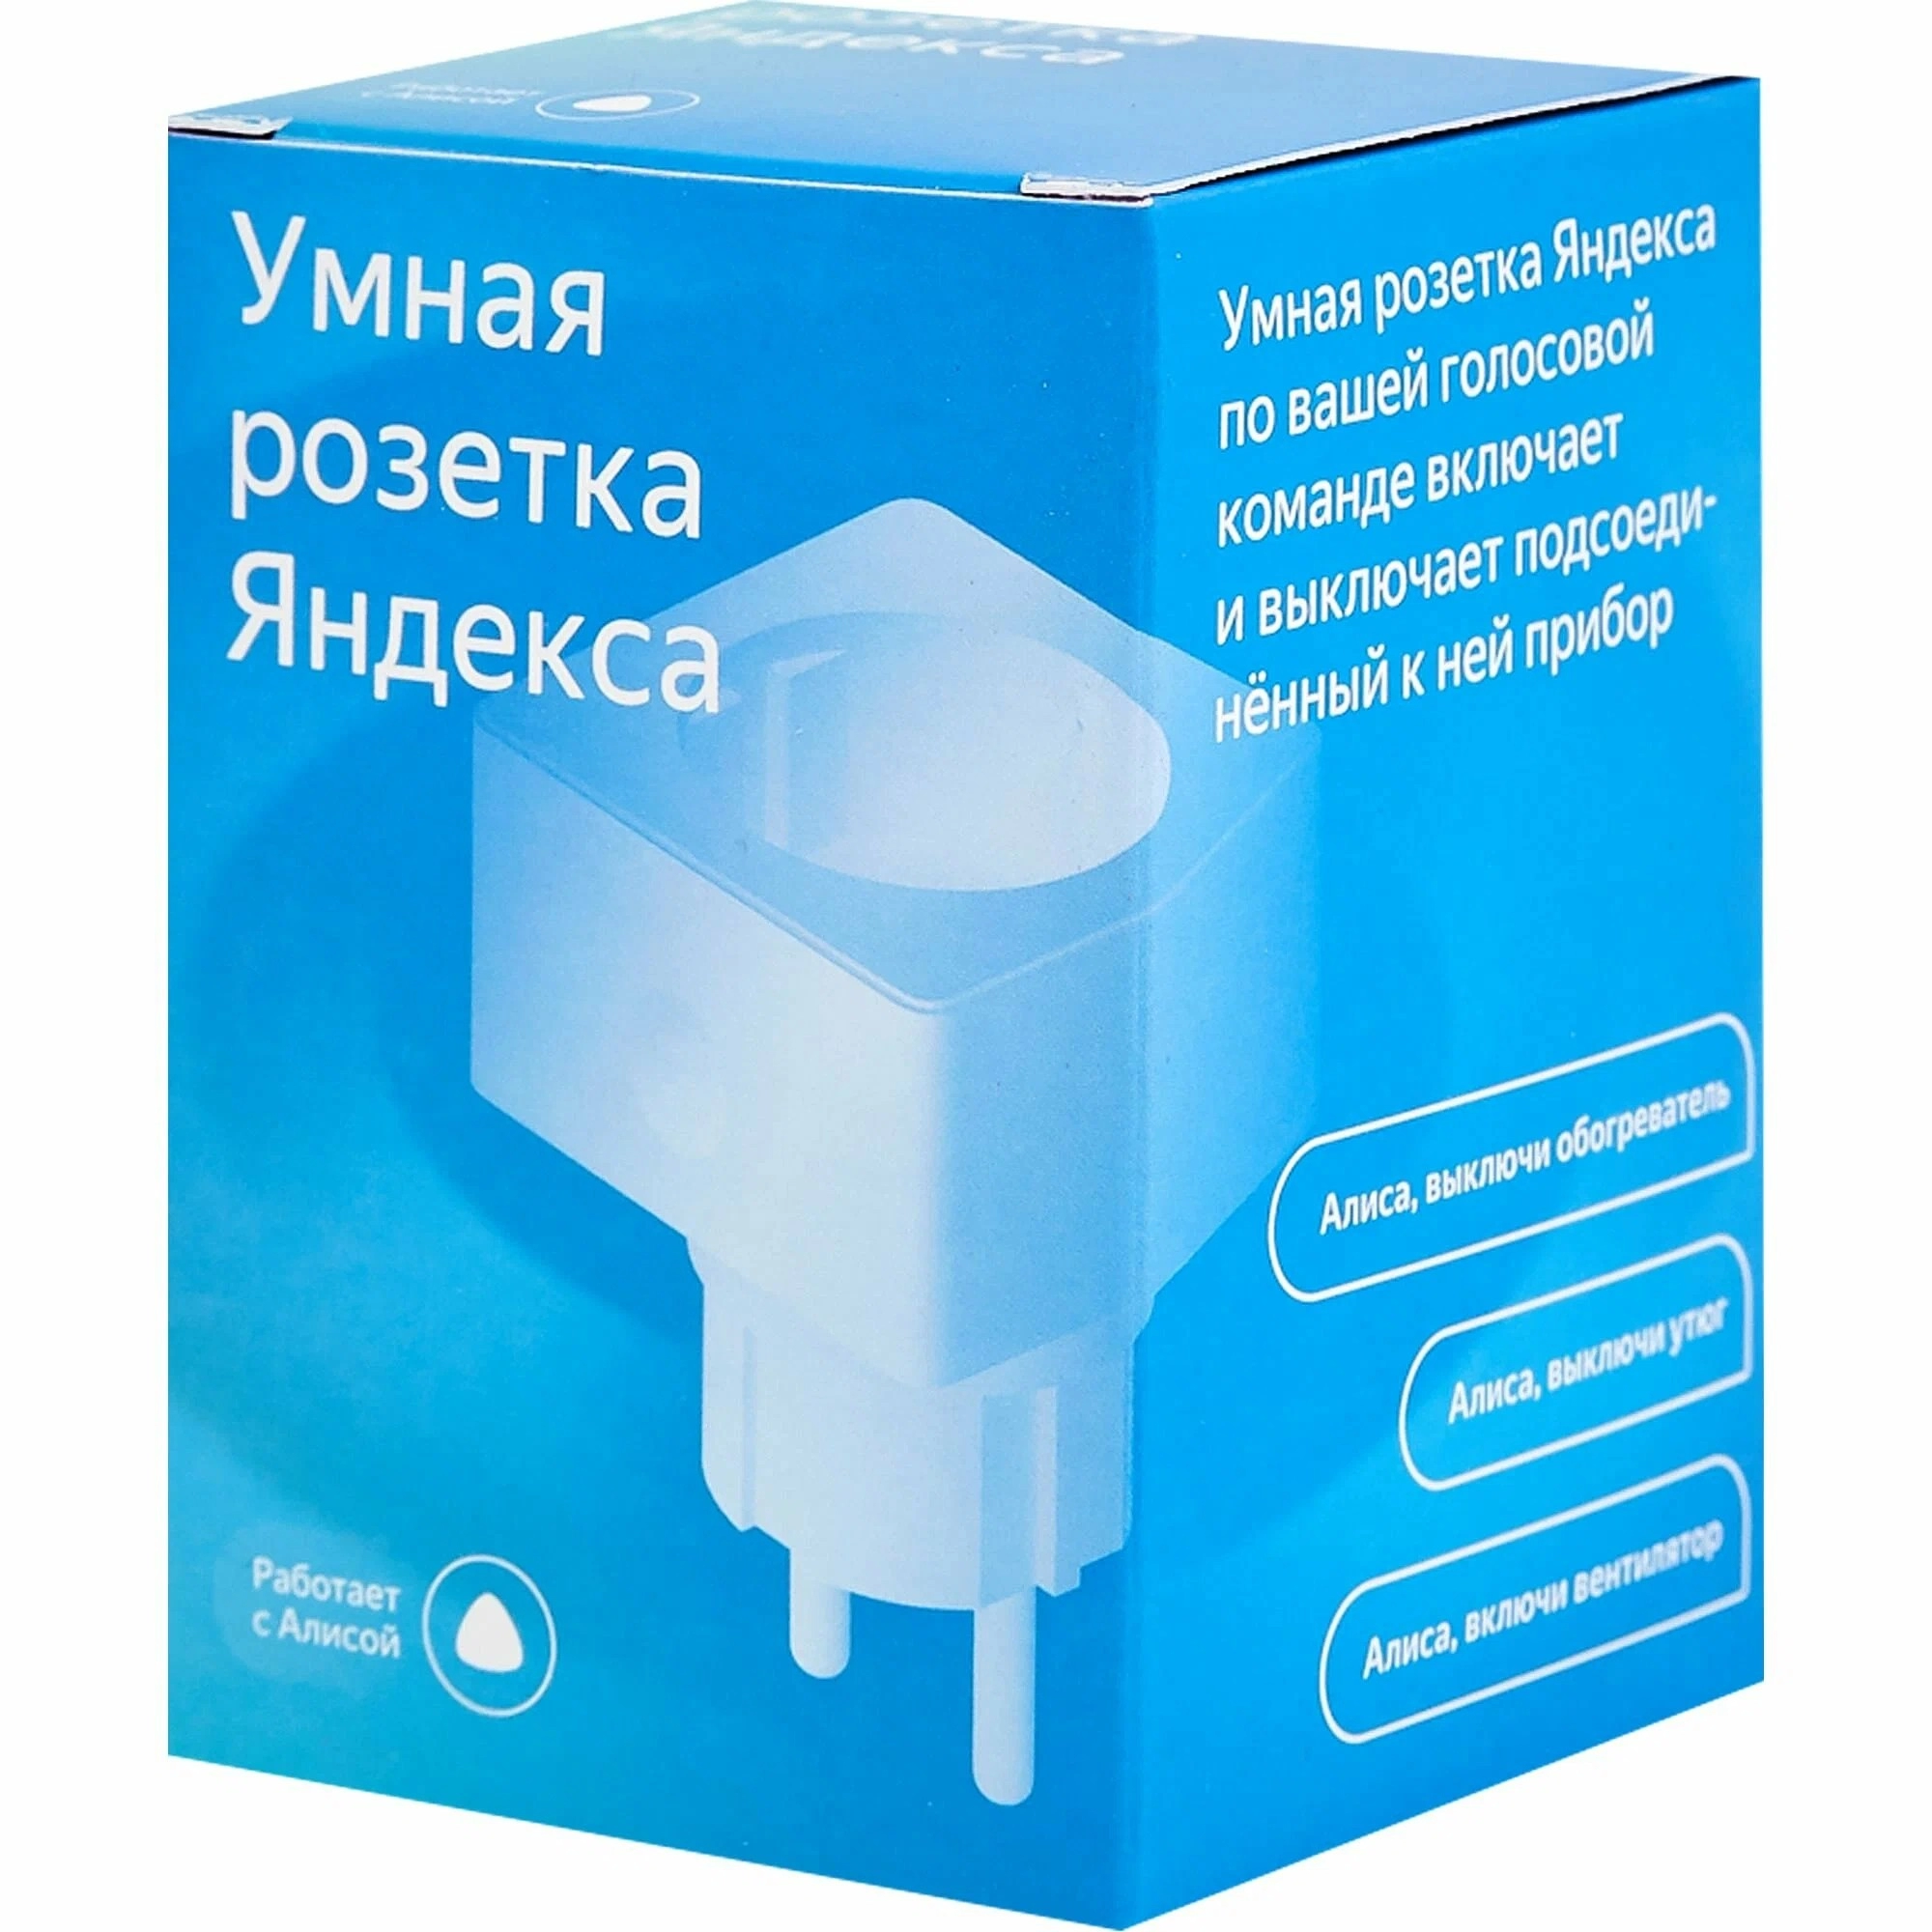 Priza Smart YANDEX YNDX-0007 / Voice Control (Alisa) / White